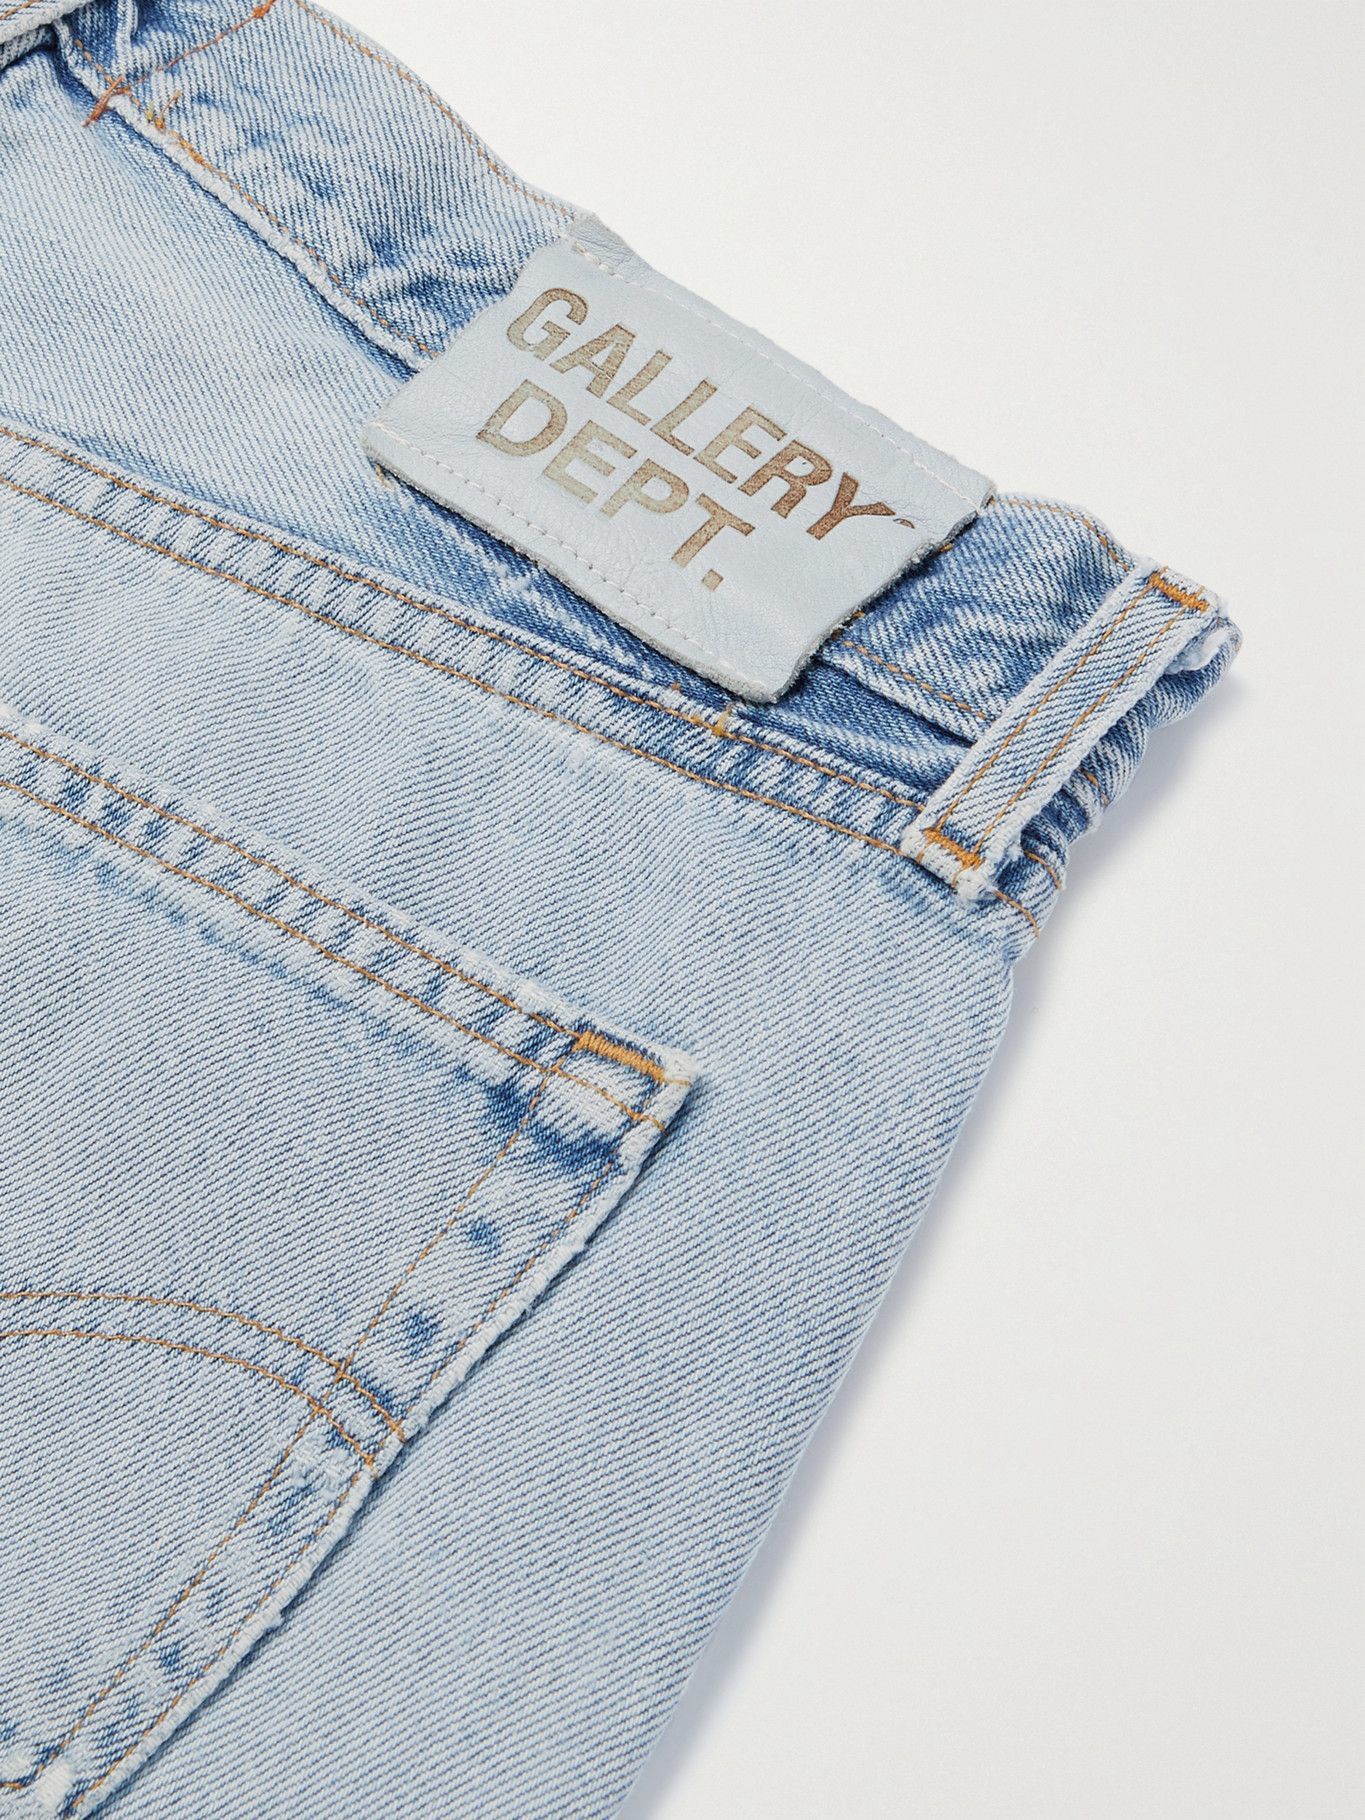 Gallery Dept. - La Flare Slim-Fit Distressed Denim Jeans - Blue Gallery Dept .